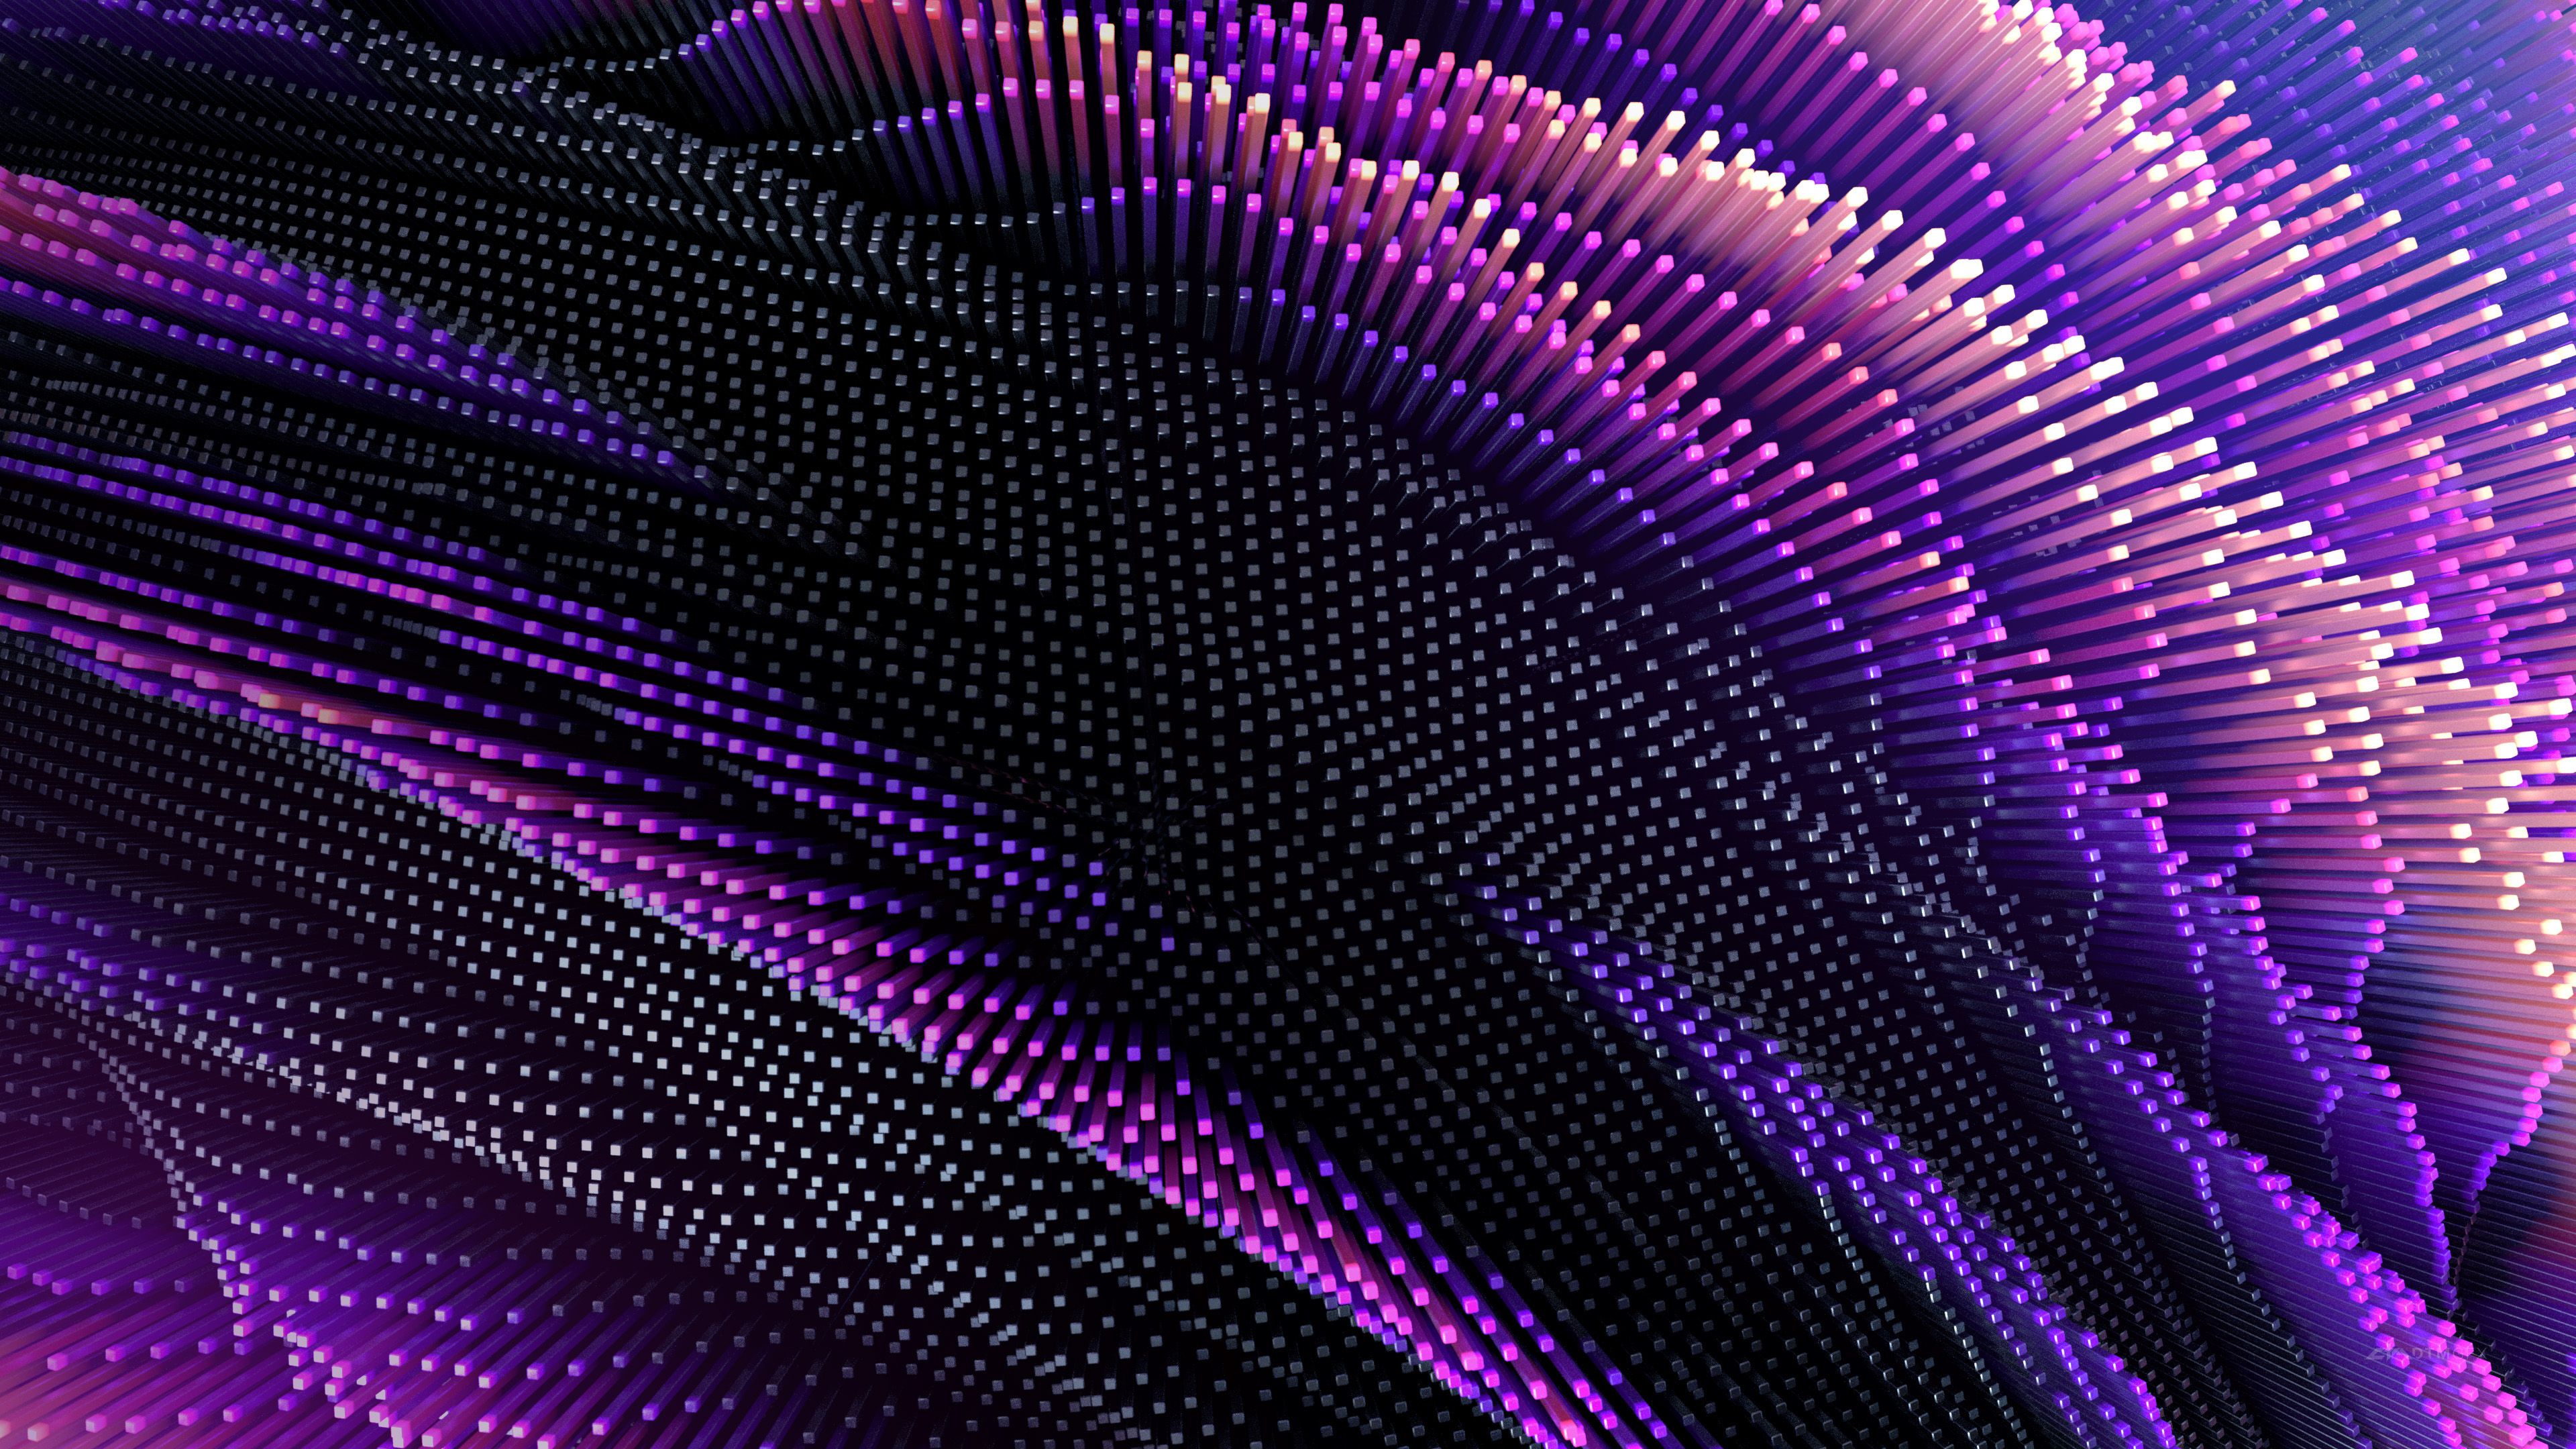 Hình Nền Tím Neon (Neon Purple Wallpaper): Với hình nền tím neon, bạn sẽ được truyền cảm hứng và tạo nên một không gian sống động, tràn đầy sức sống. Hãy cùng chiêm ngưỡng vẻ đẹp tuyệt vời của màn hình của bạn.